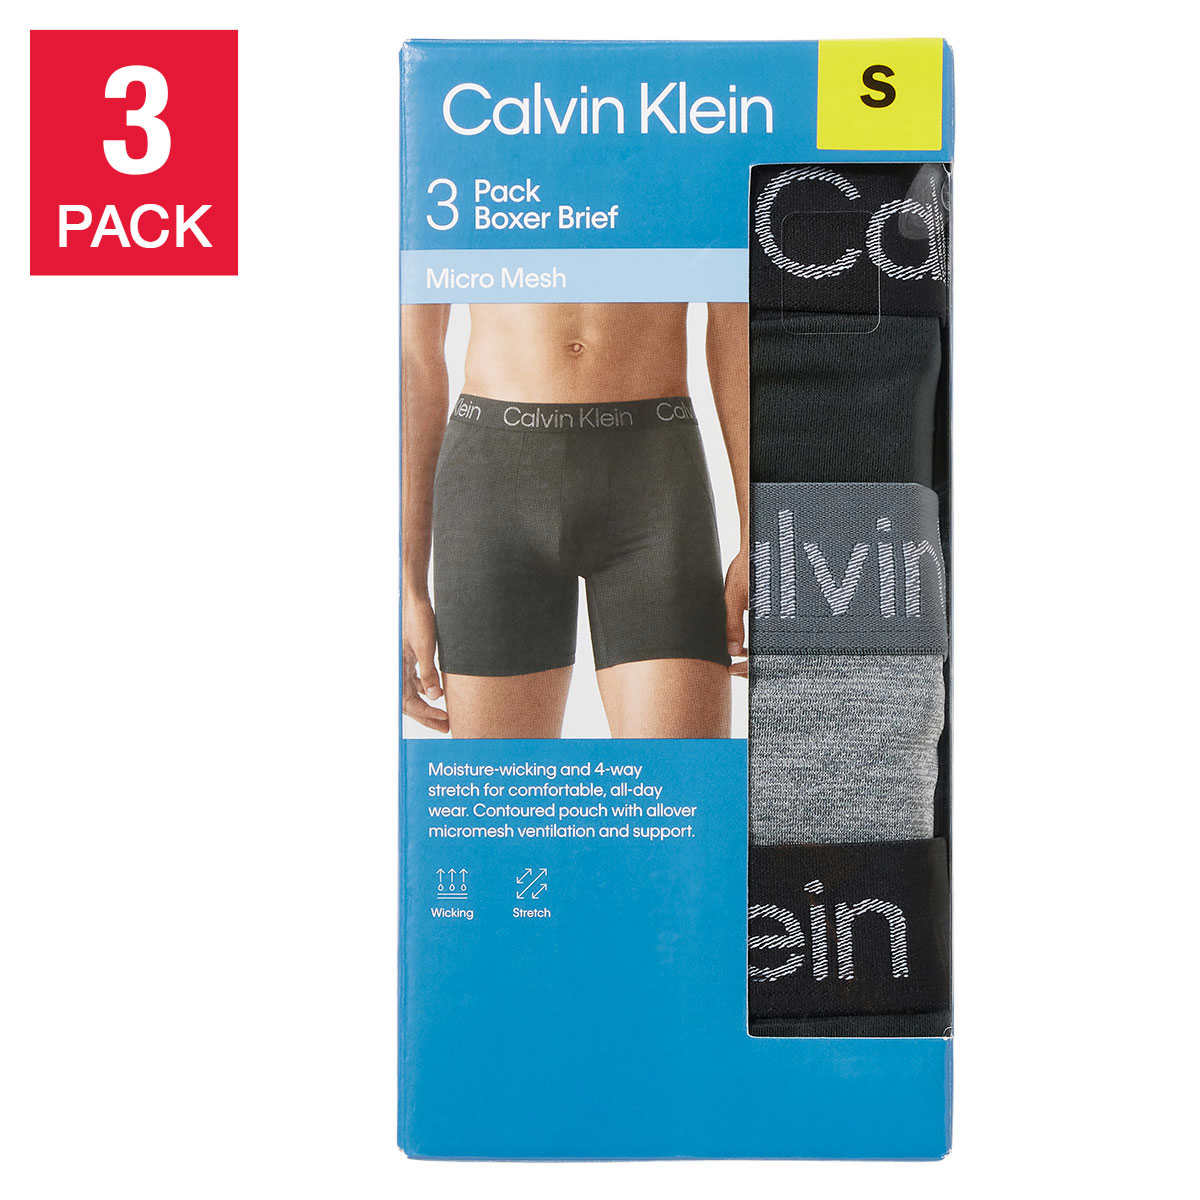 CALVIN KLEIN - Contoured pouch brief 